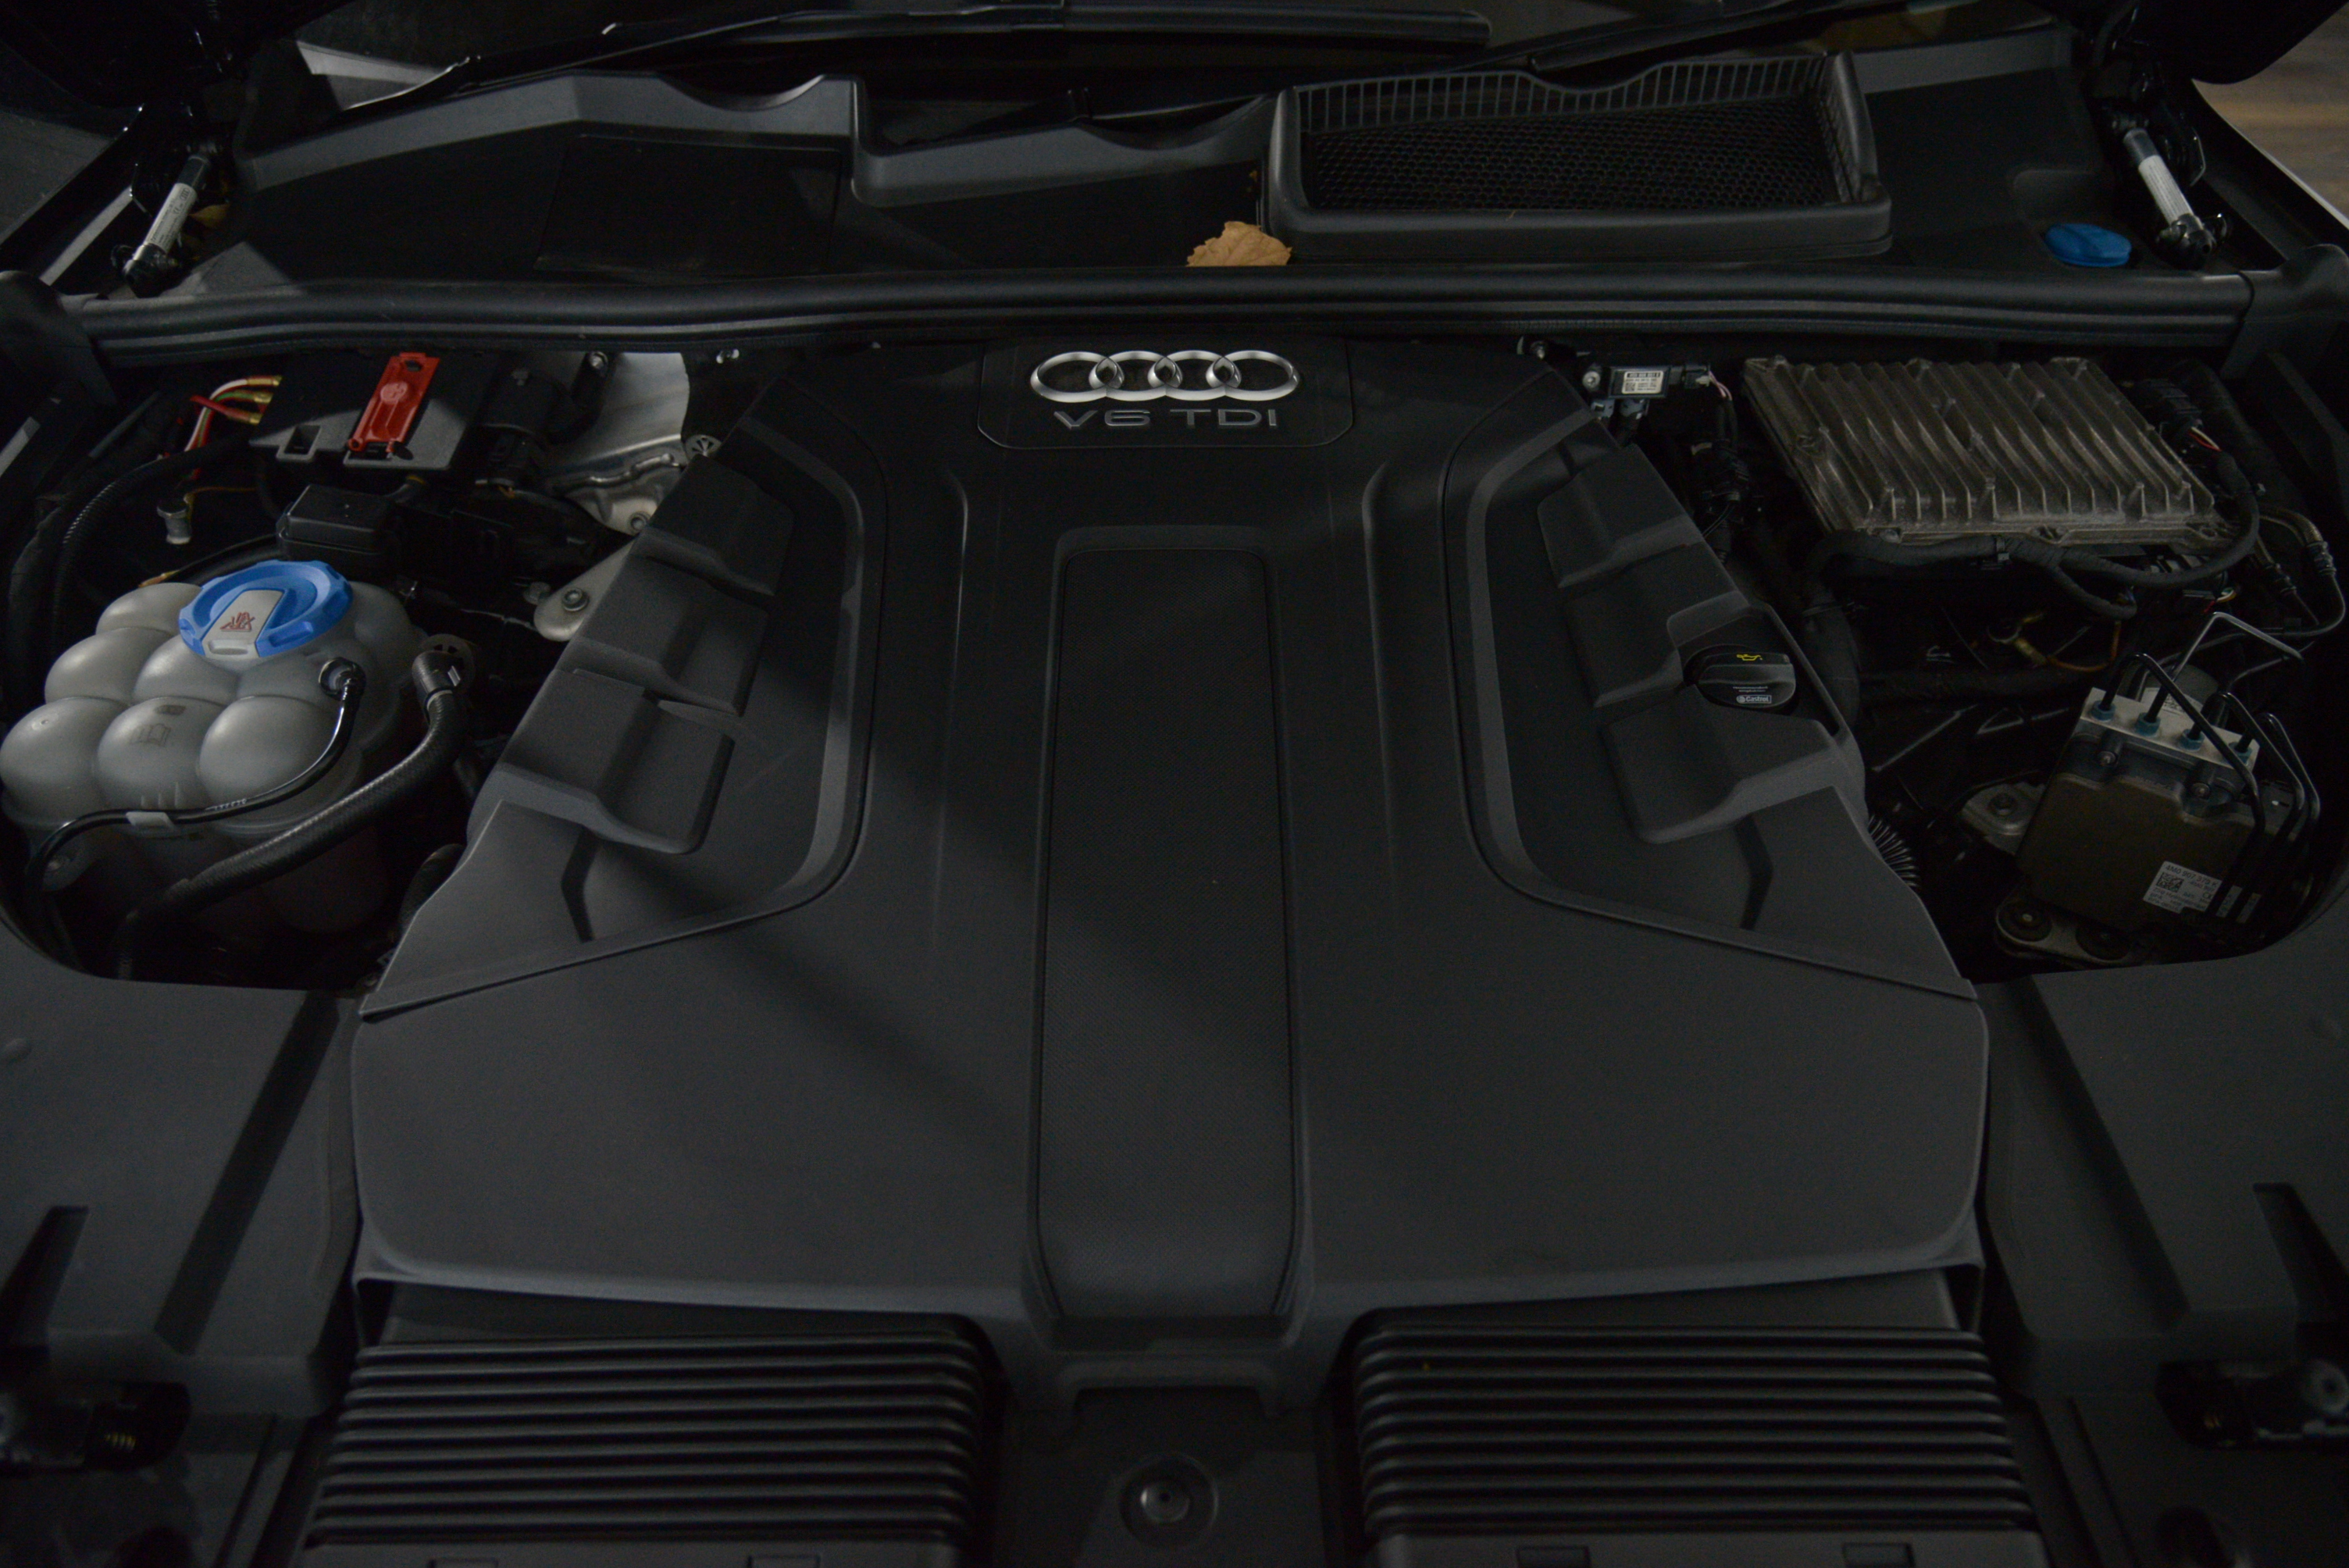 2015 Audi Q7 Audi Q7 3.0 Tdi Quattro Auto 3.0 Tdi Quattro SUV Image 32